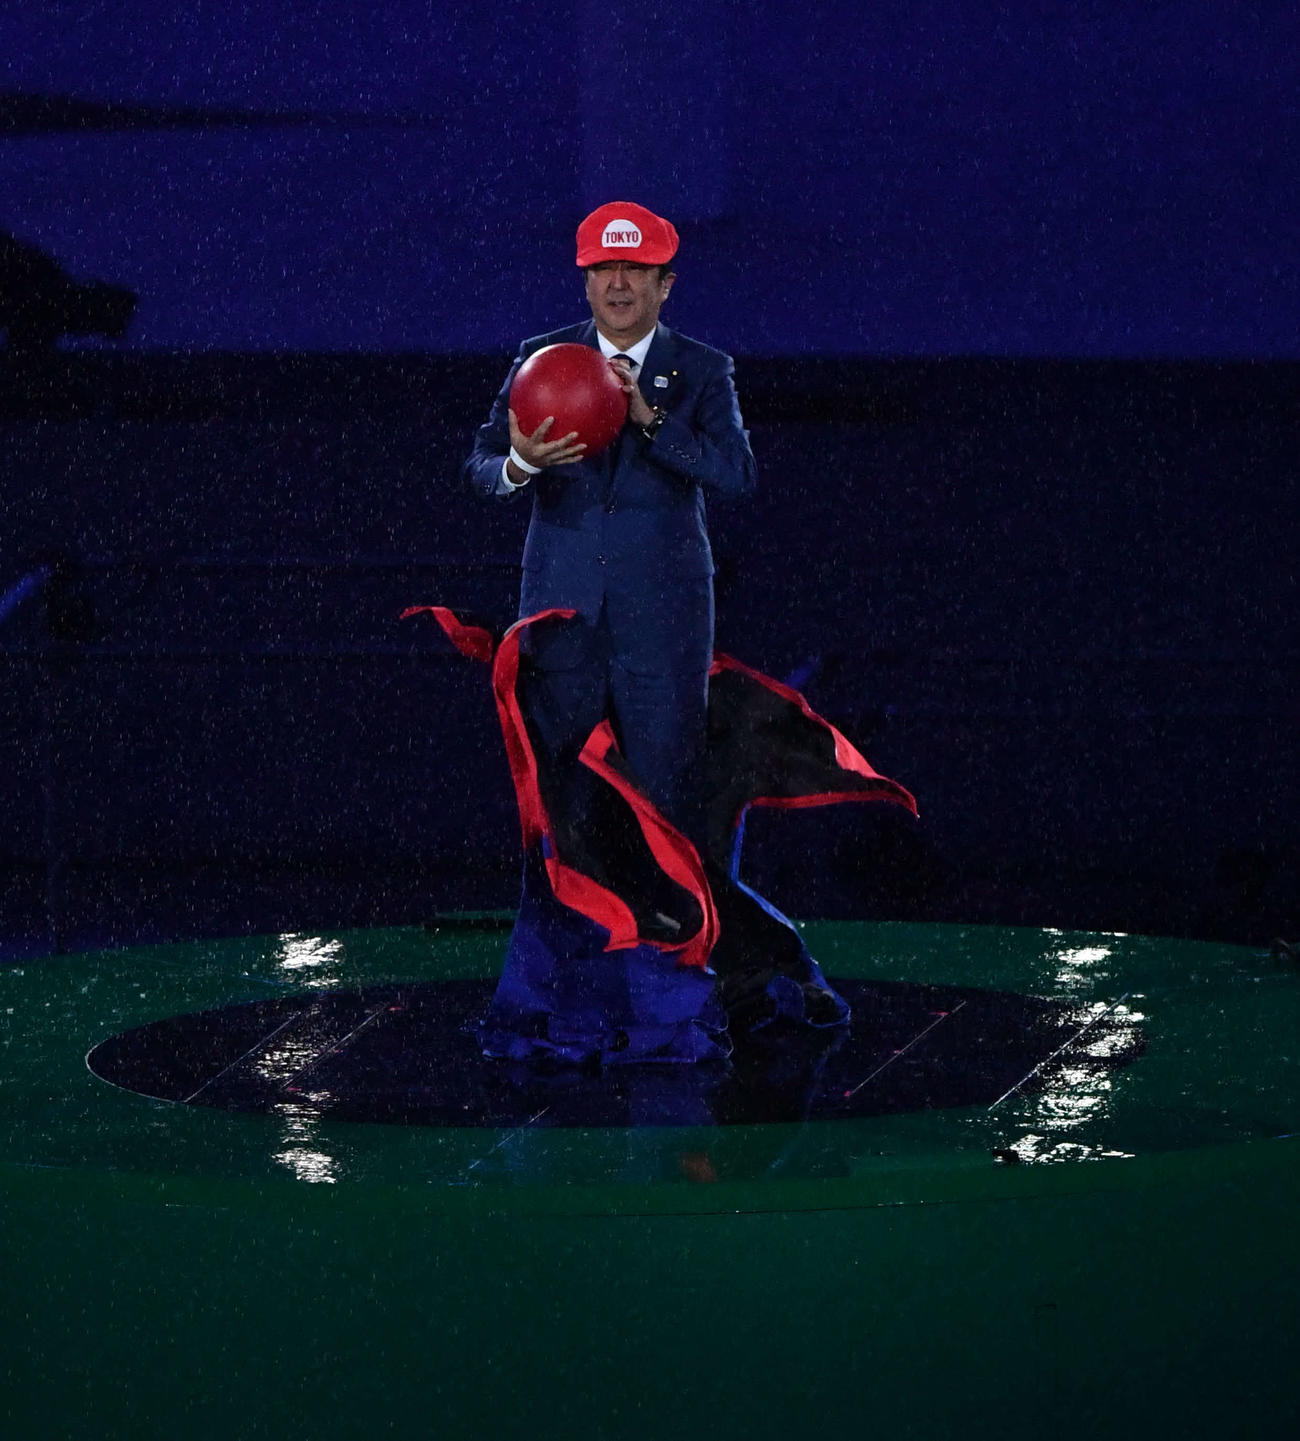 16年8月、リオデジャネイロ五輪の閉会式で、次期開催地の東京を紹介するショーの一部でマリオの衣装を脱いで登場した安倍晋三前首相